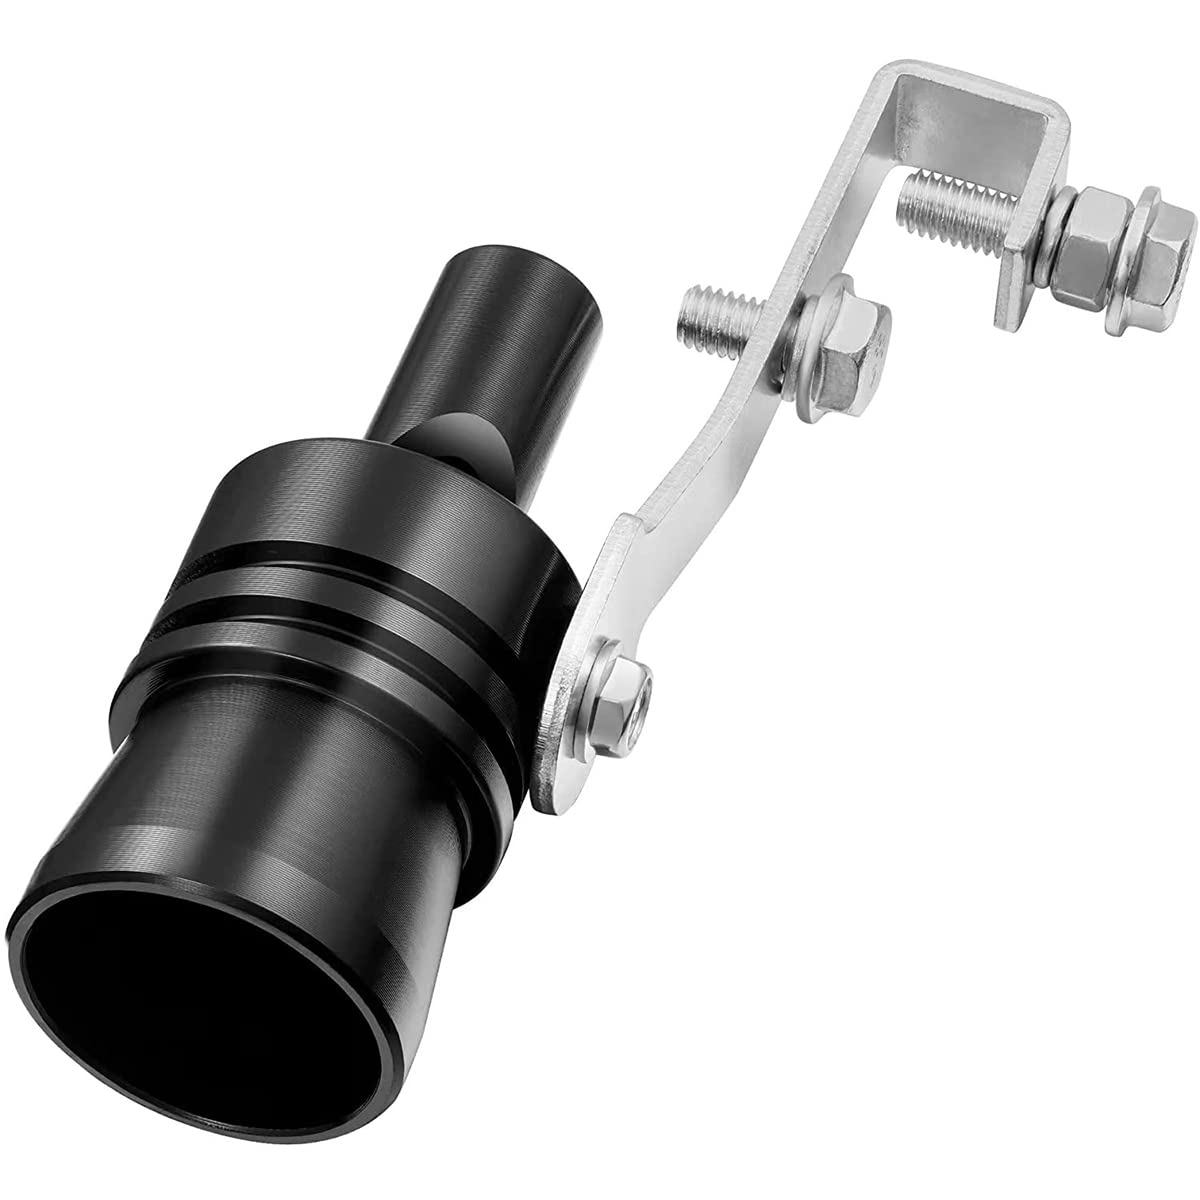 Turbo Sound Whistle, Aluminiumlegierung Auto Turbo Sound Auspuff Schalldämpfer Auto Modifiziertes Teil TC-XL(Schwarz) von Ausla